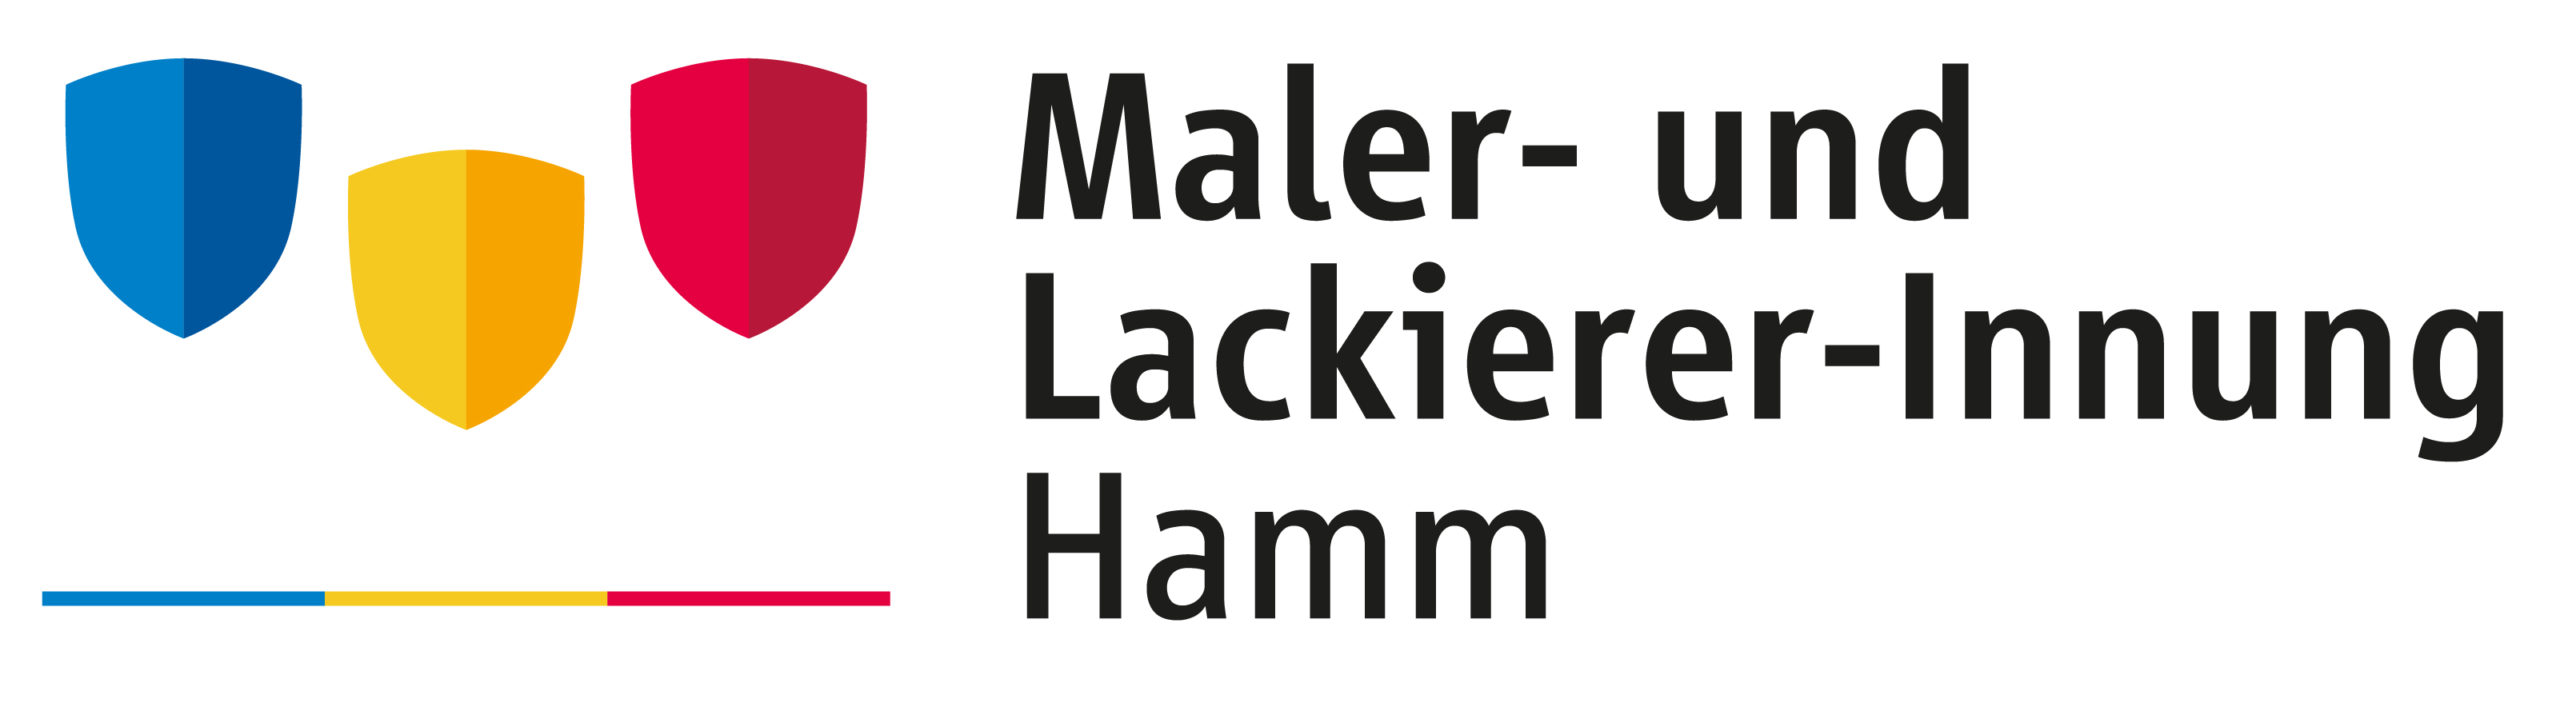 Logo der Maler- und Lackierer-Innung Hamm